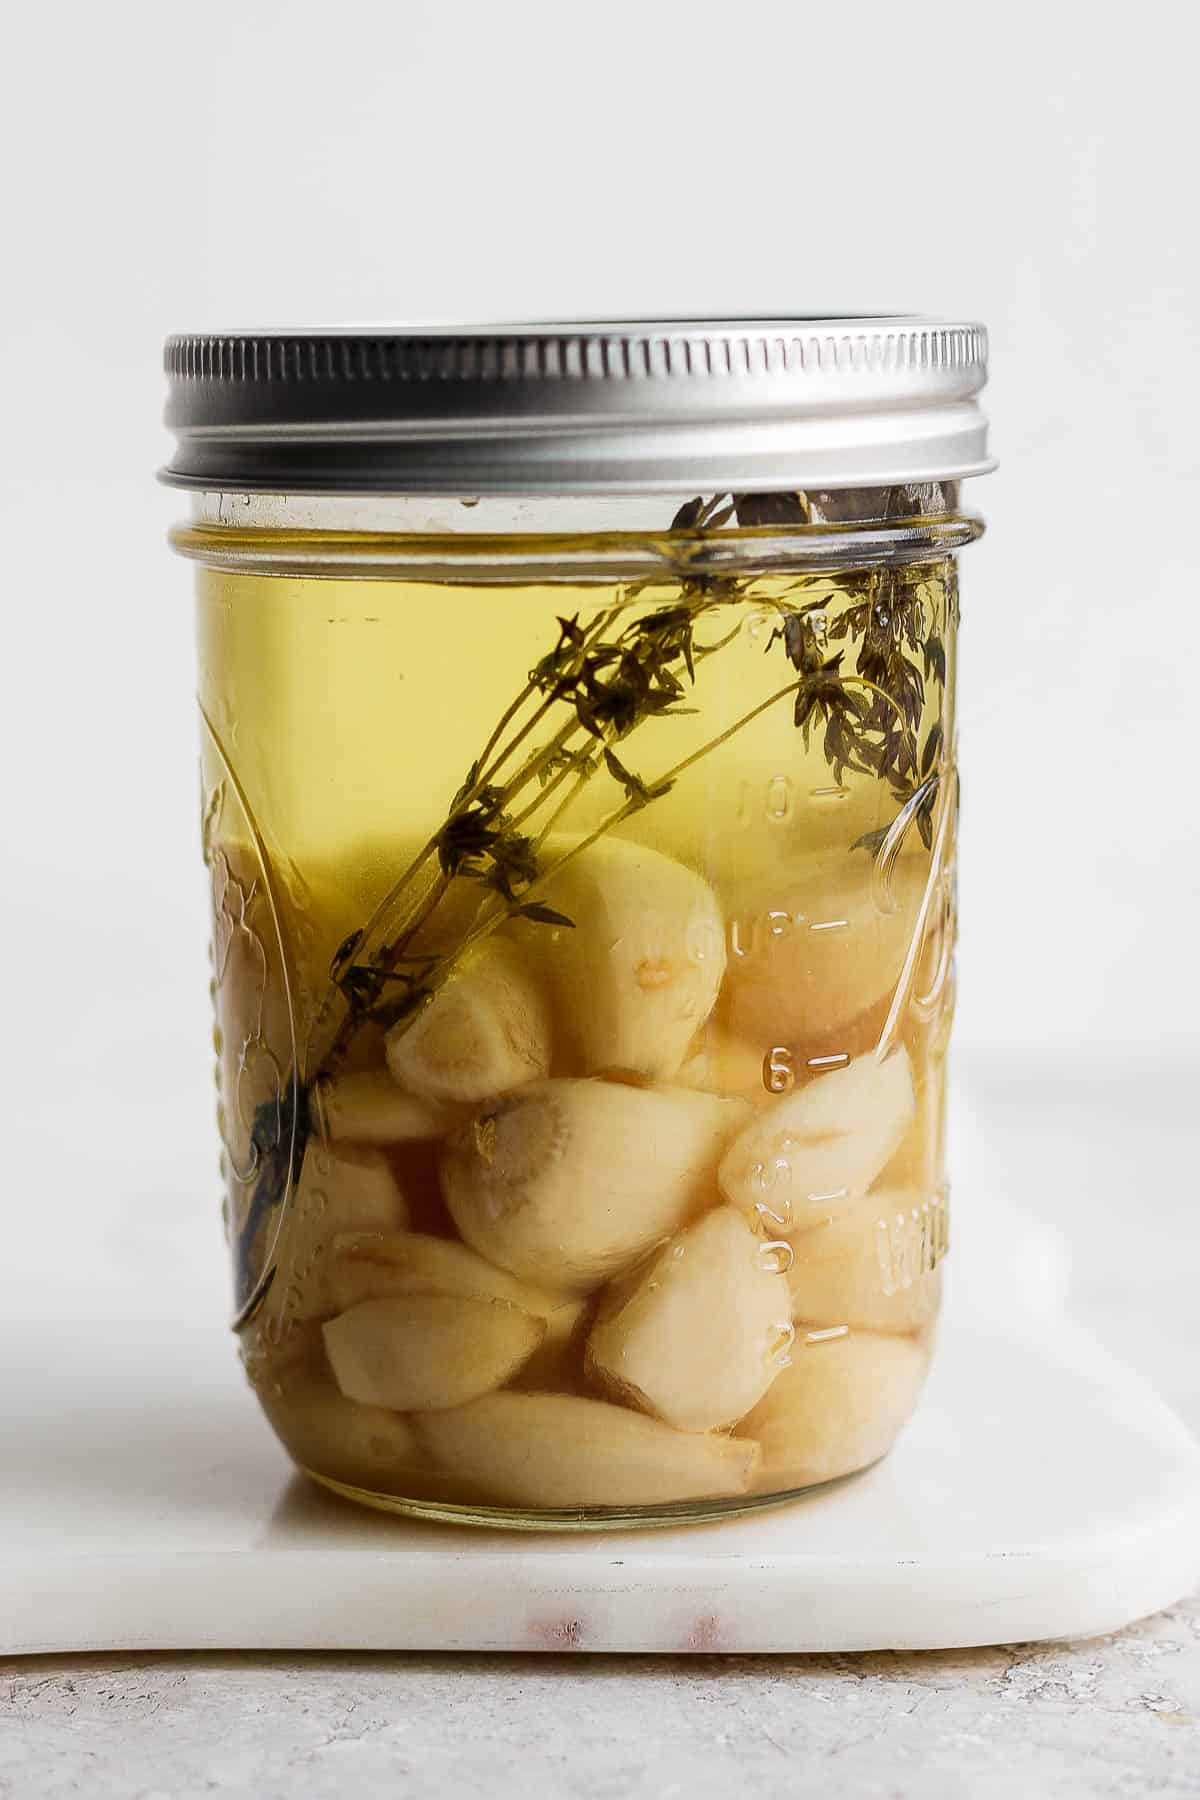 Garlic confit in a mason jar.